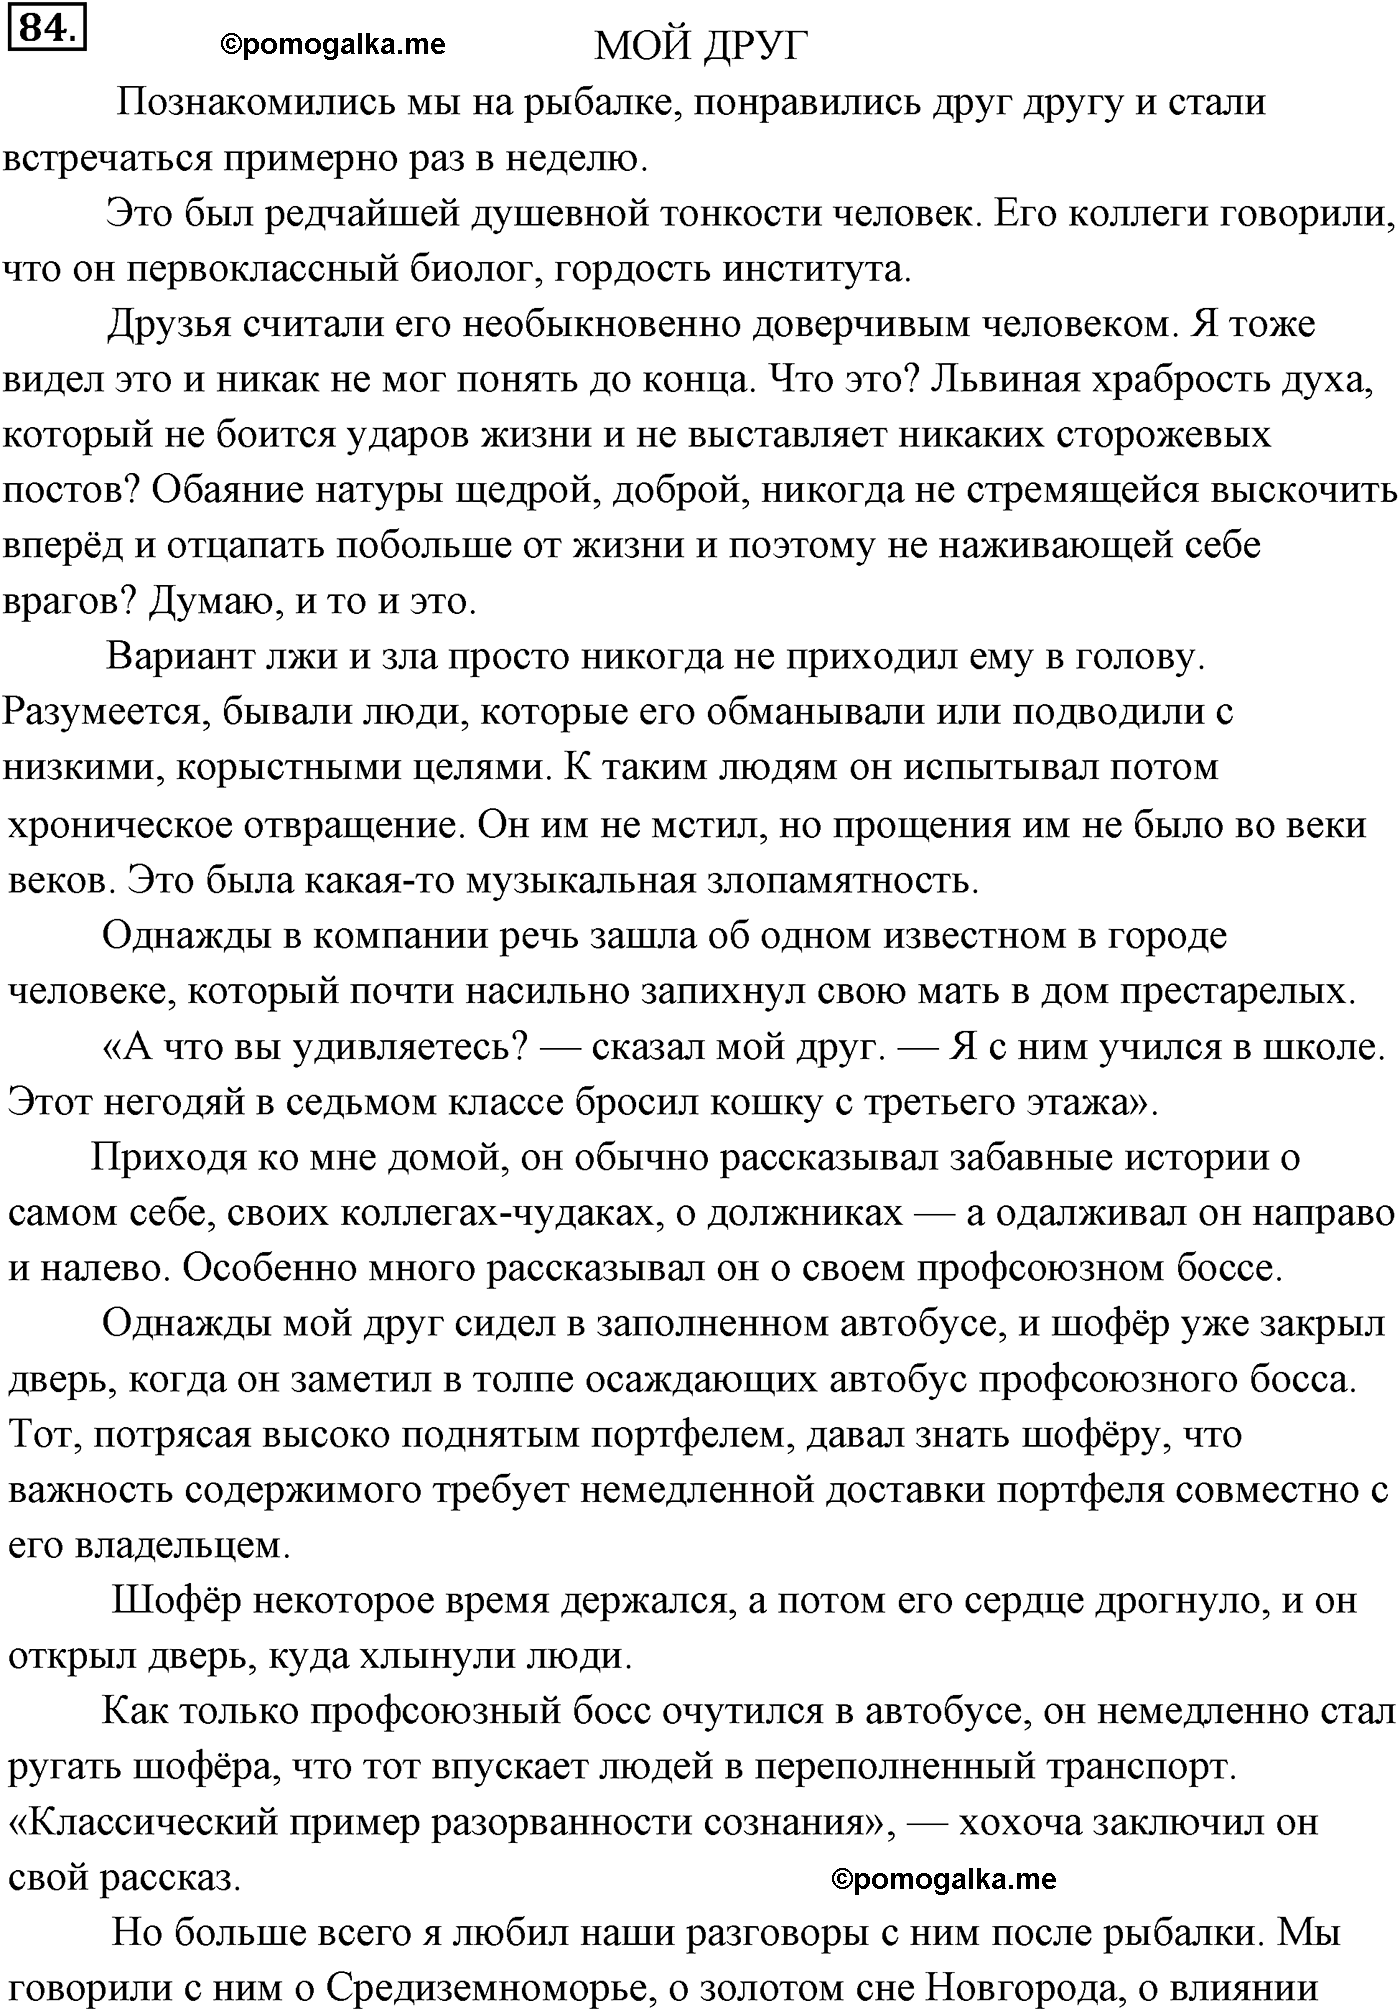 страница 64 номер 84 русский язык 9 класс Разумовская 2011 год